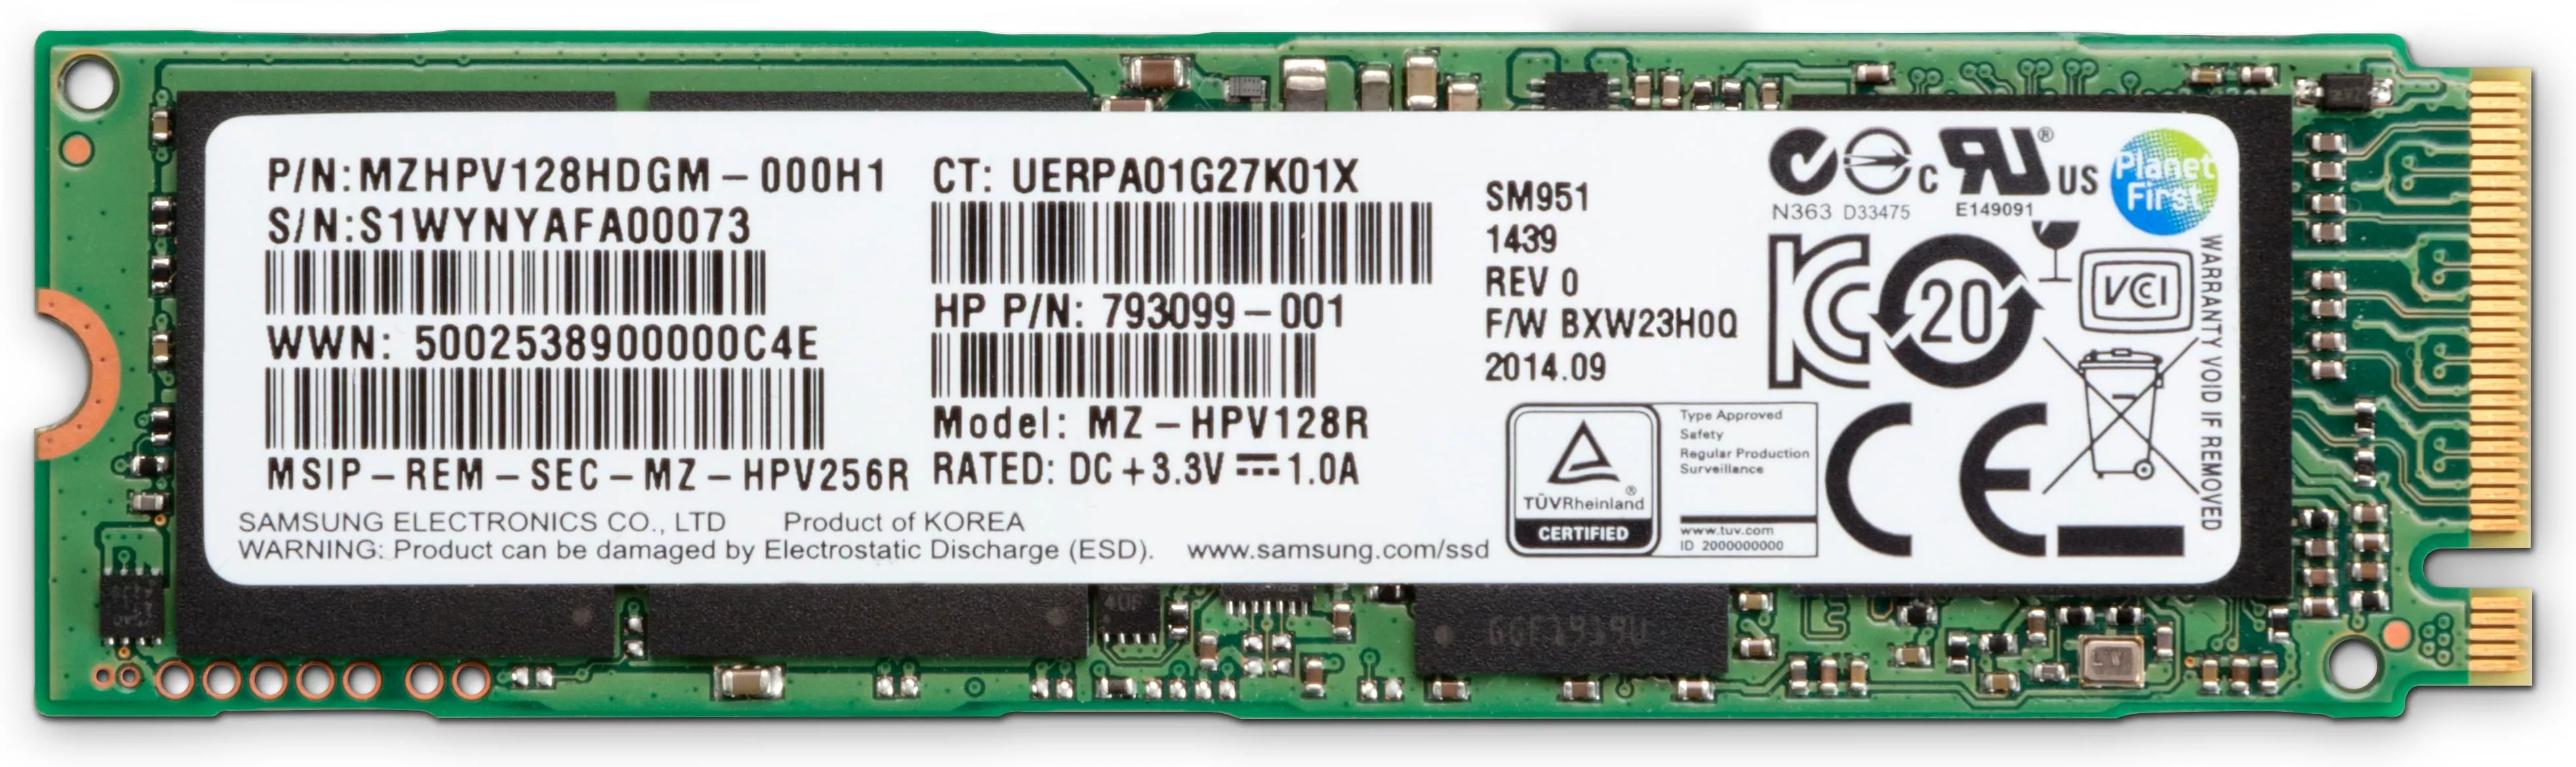 Achat HP Disque SSD NVME 2260 M.2 PCI-E 3 x 4 de 1 To au meilleur prix